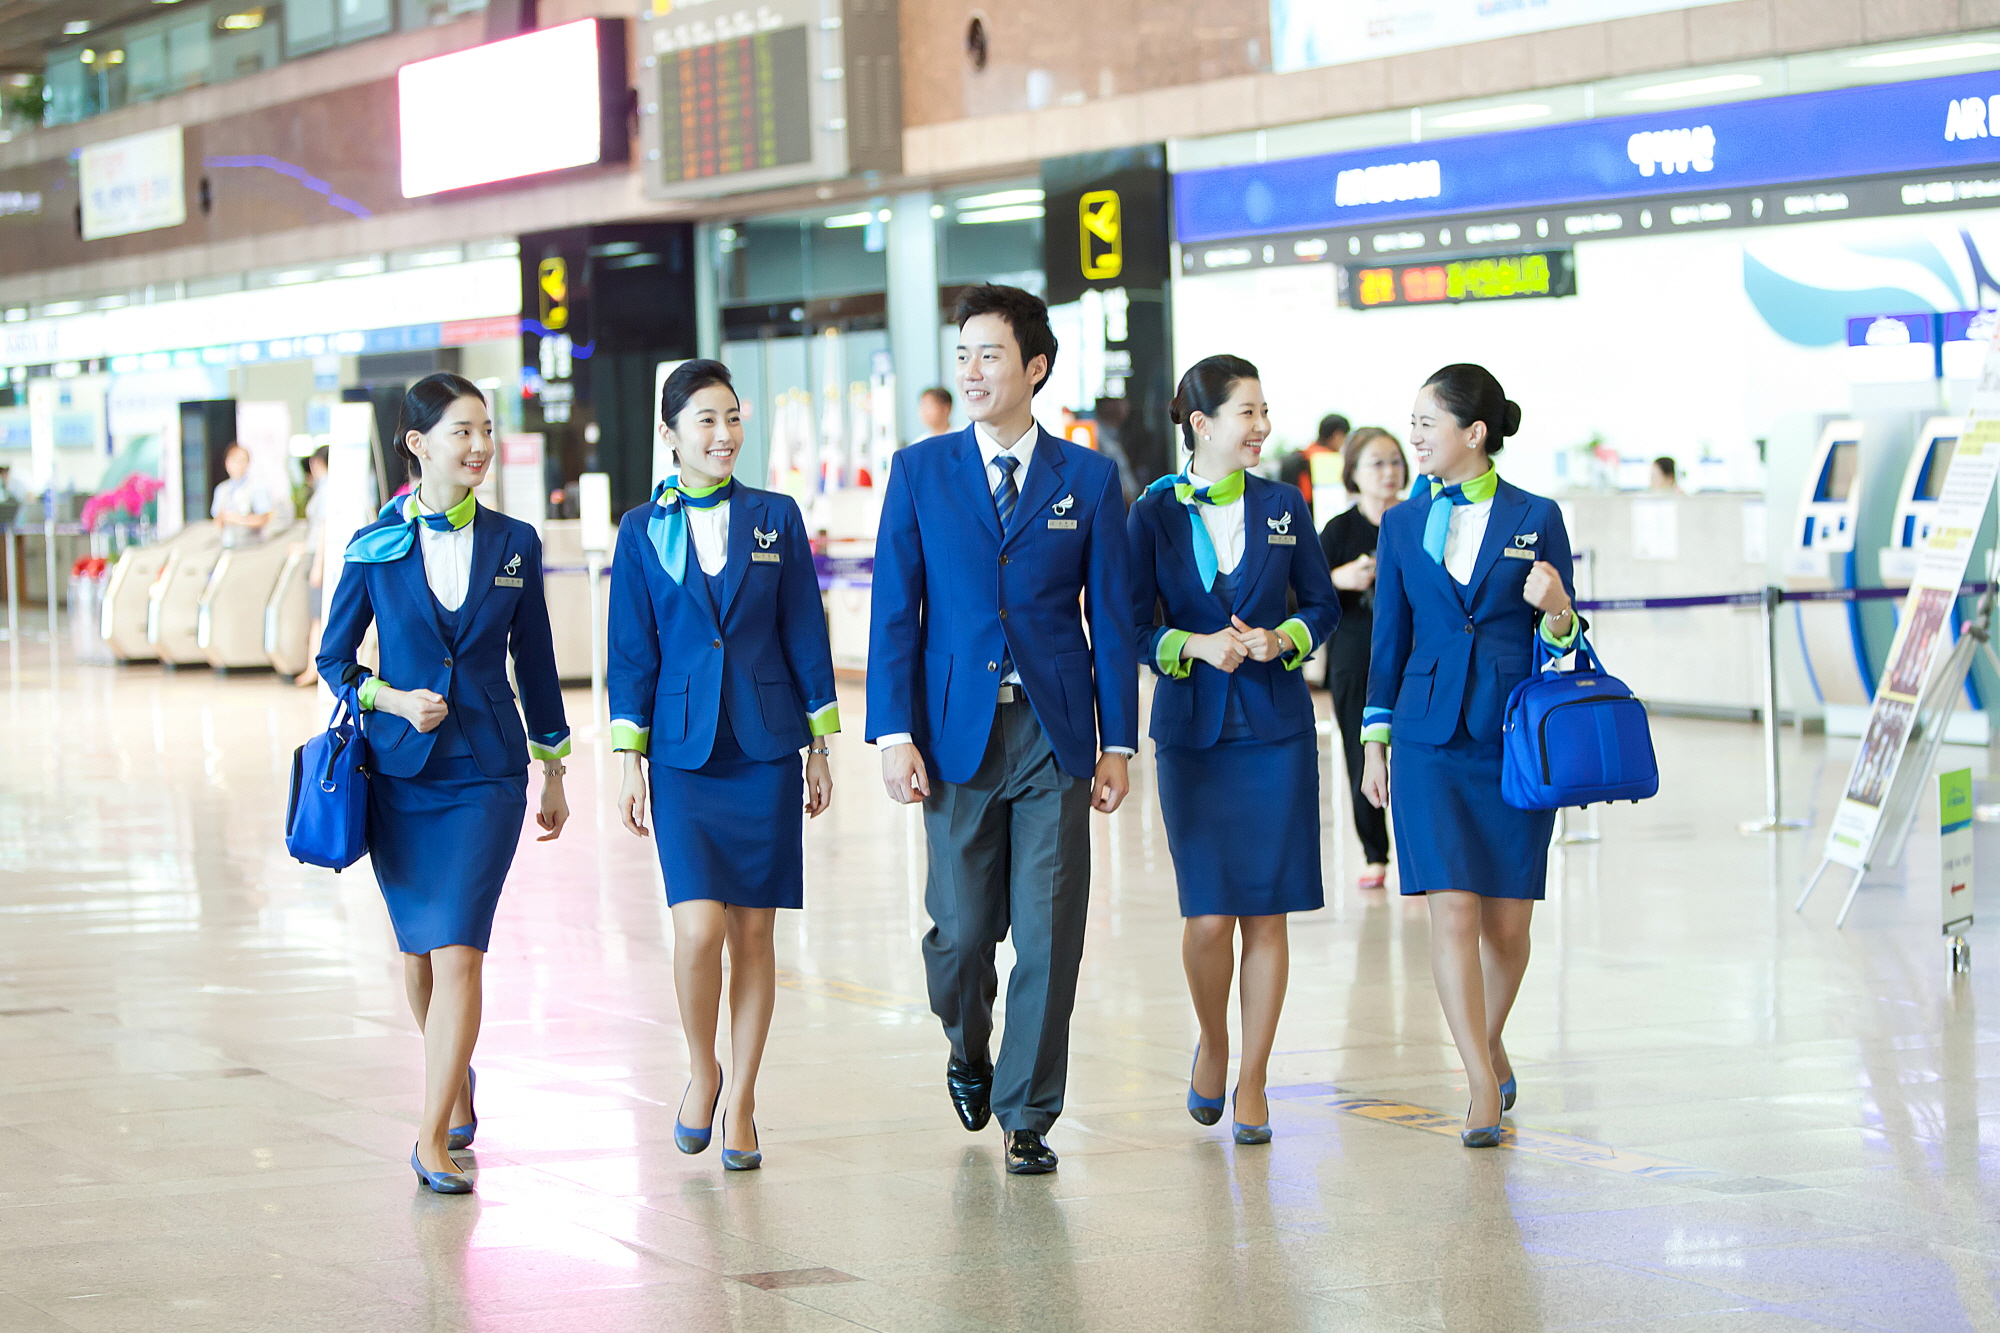 Đồng phục của tiếp viên hàng không Hàn Quốc: Đa phần đều nhã nhặn nhưng đột phá nhất thì phải là hãng cuối - Ảnh 13.